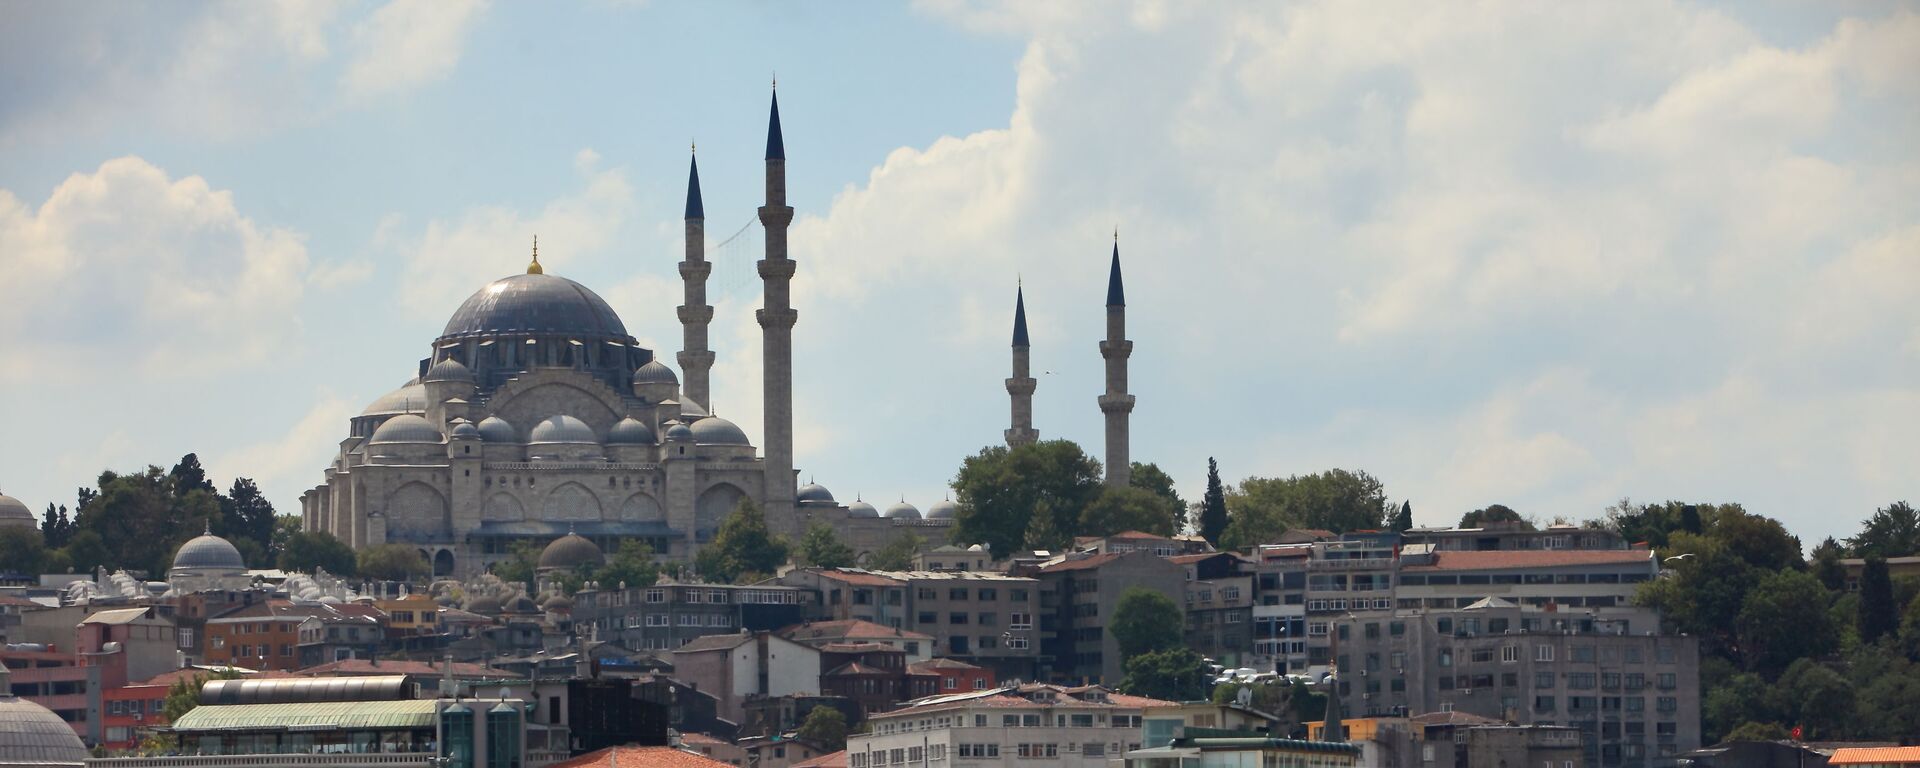 Вид на Голубую мечеть через пролив Босфор в Стамбуле, Турция - Sputnik Армения, 1920, 29.05.2021